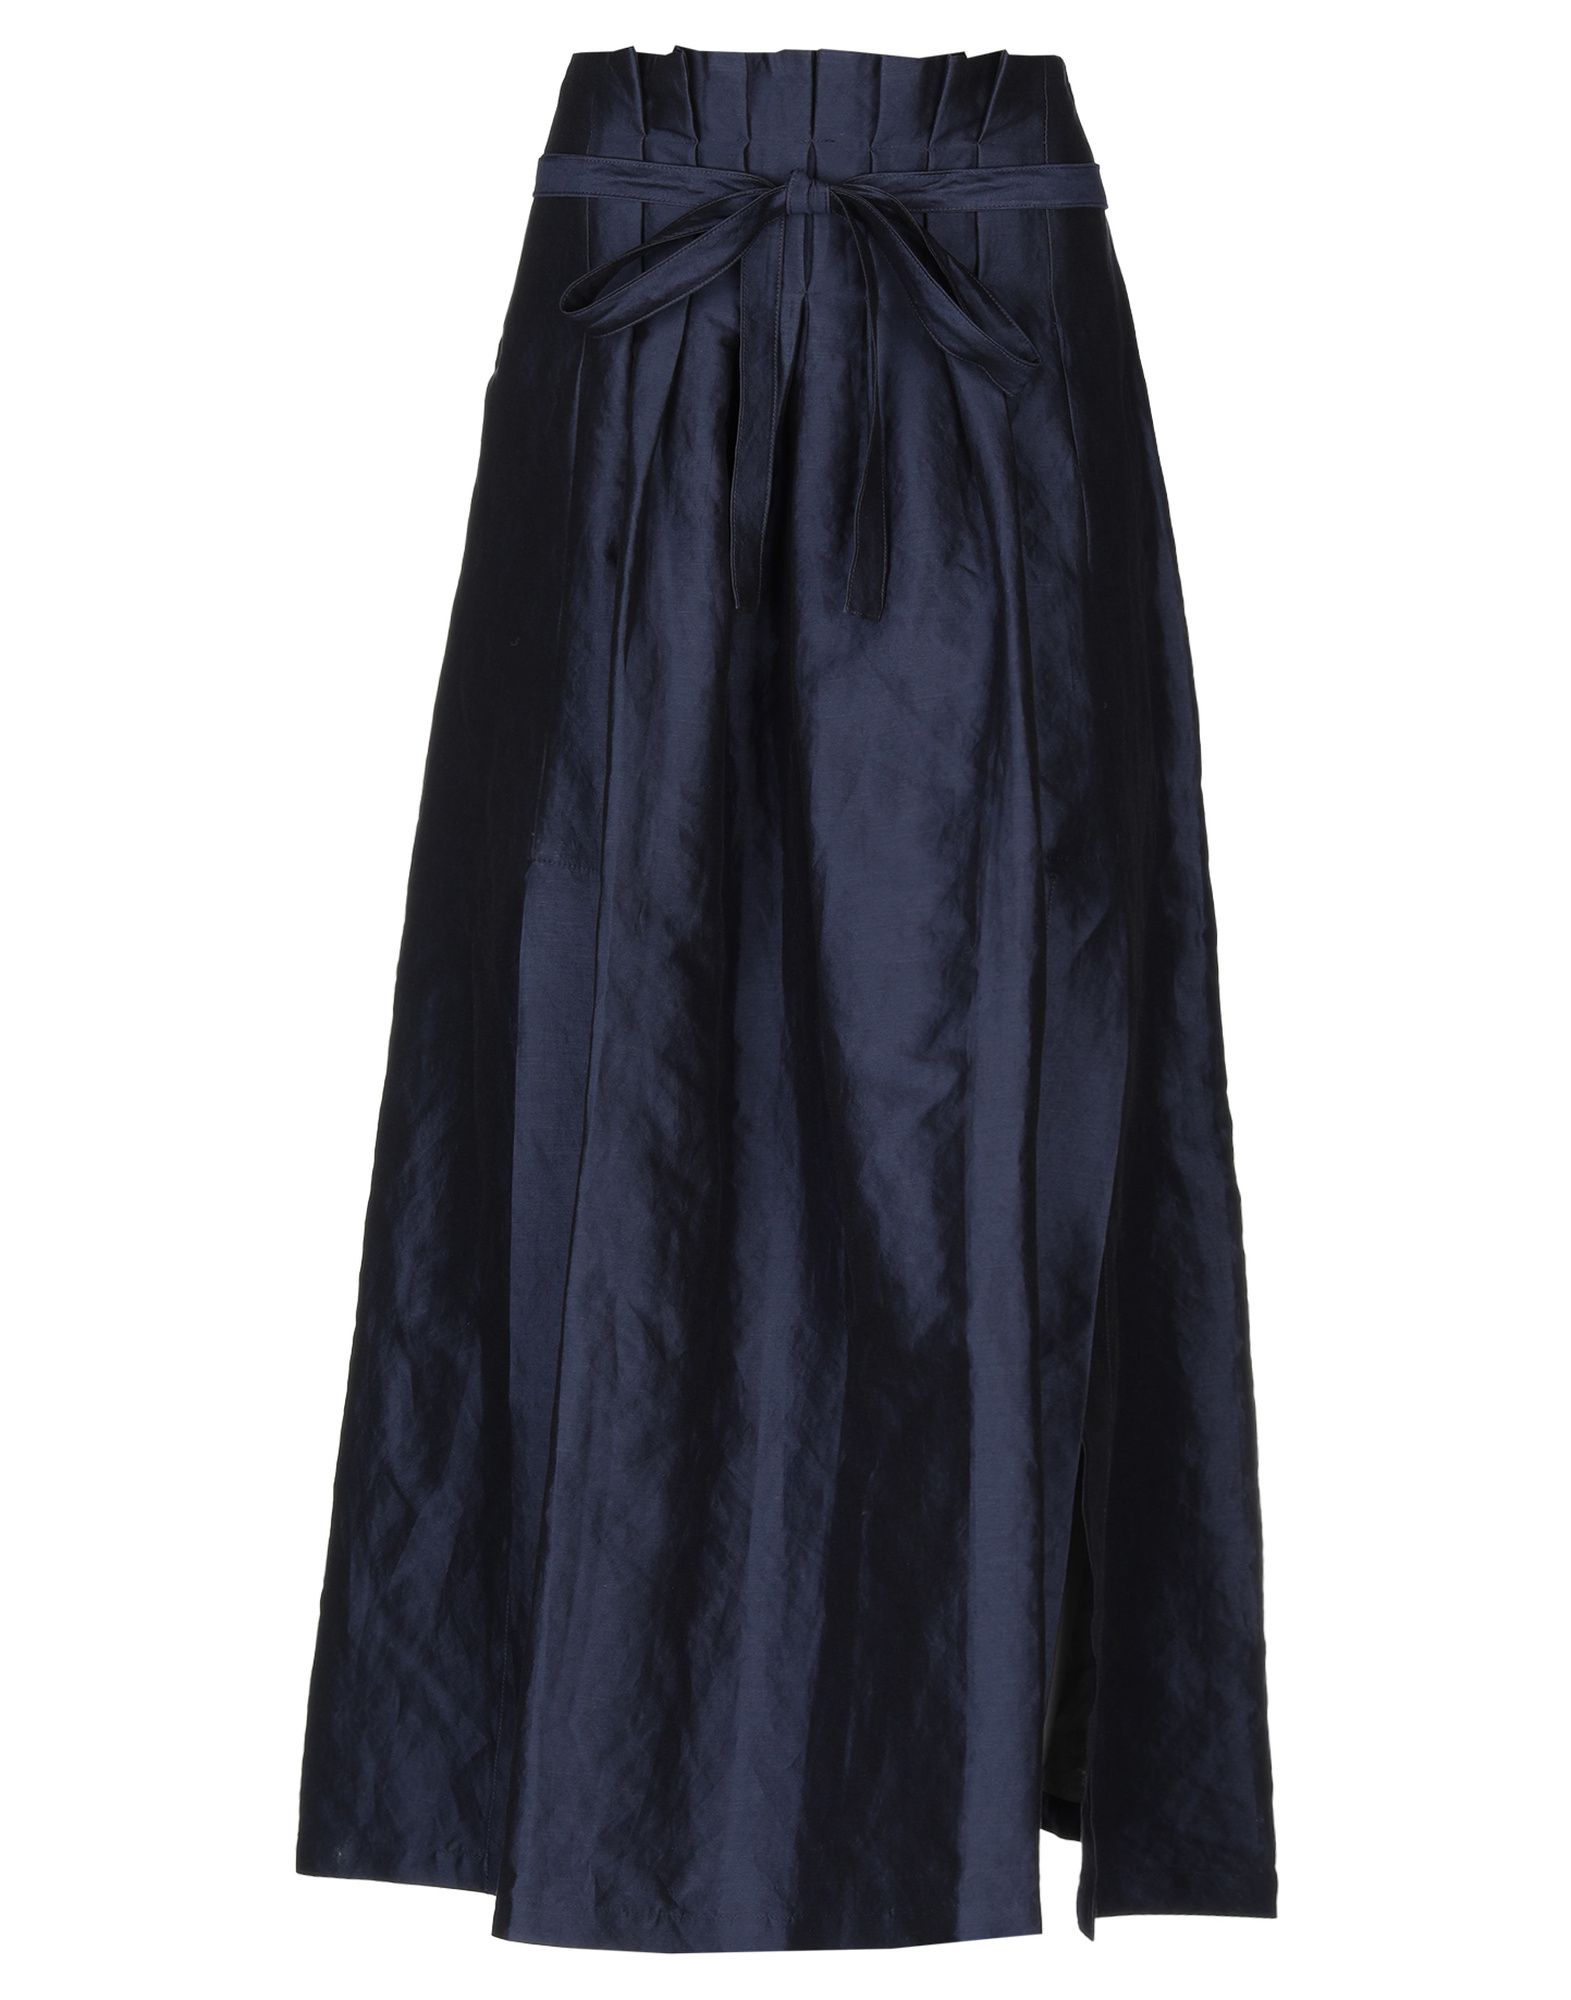 Длинная юбка  - Синий цвет